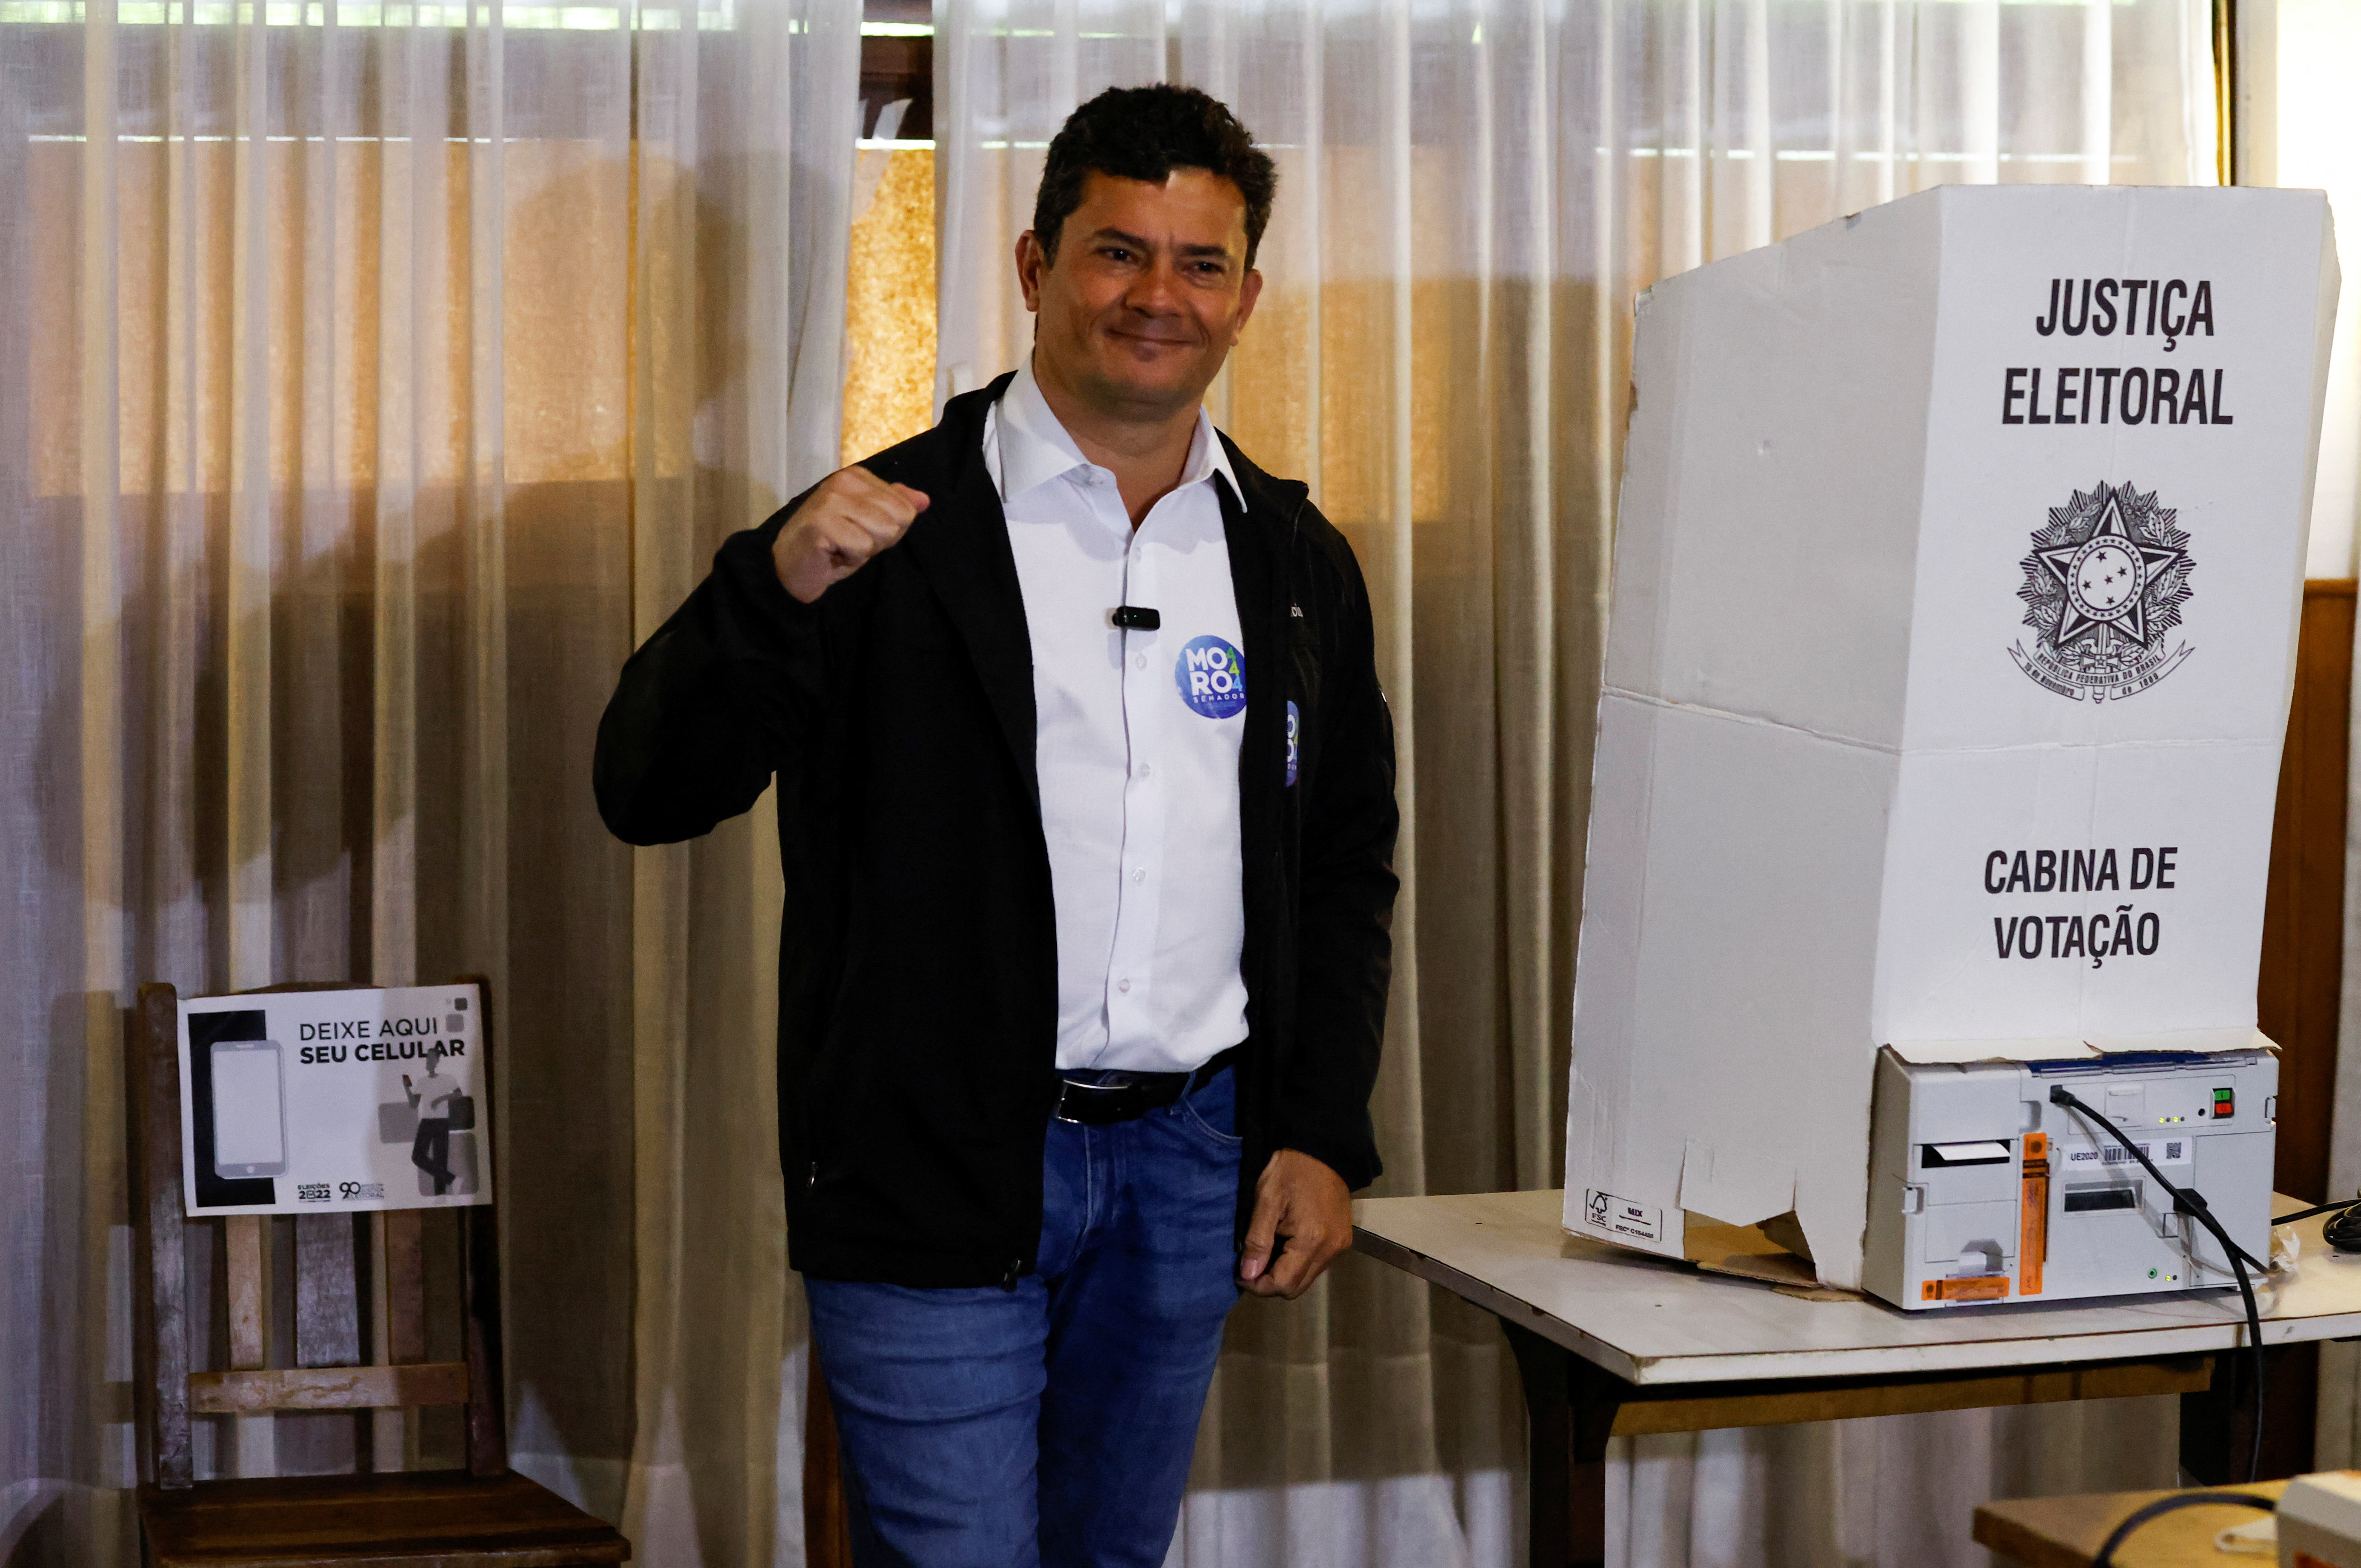 El ex juez Sergio Moro después de emitir su voto, en Curitiba, Brasil, el 2 de octubre de 2022 (REUTERS/Rodolfo Buhrer)